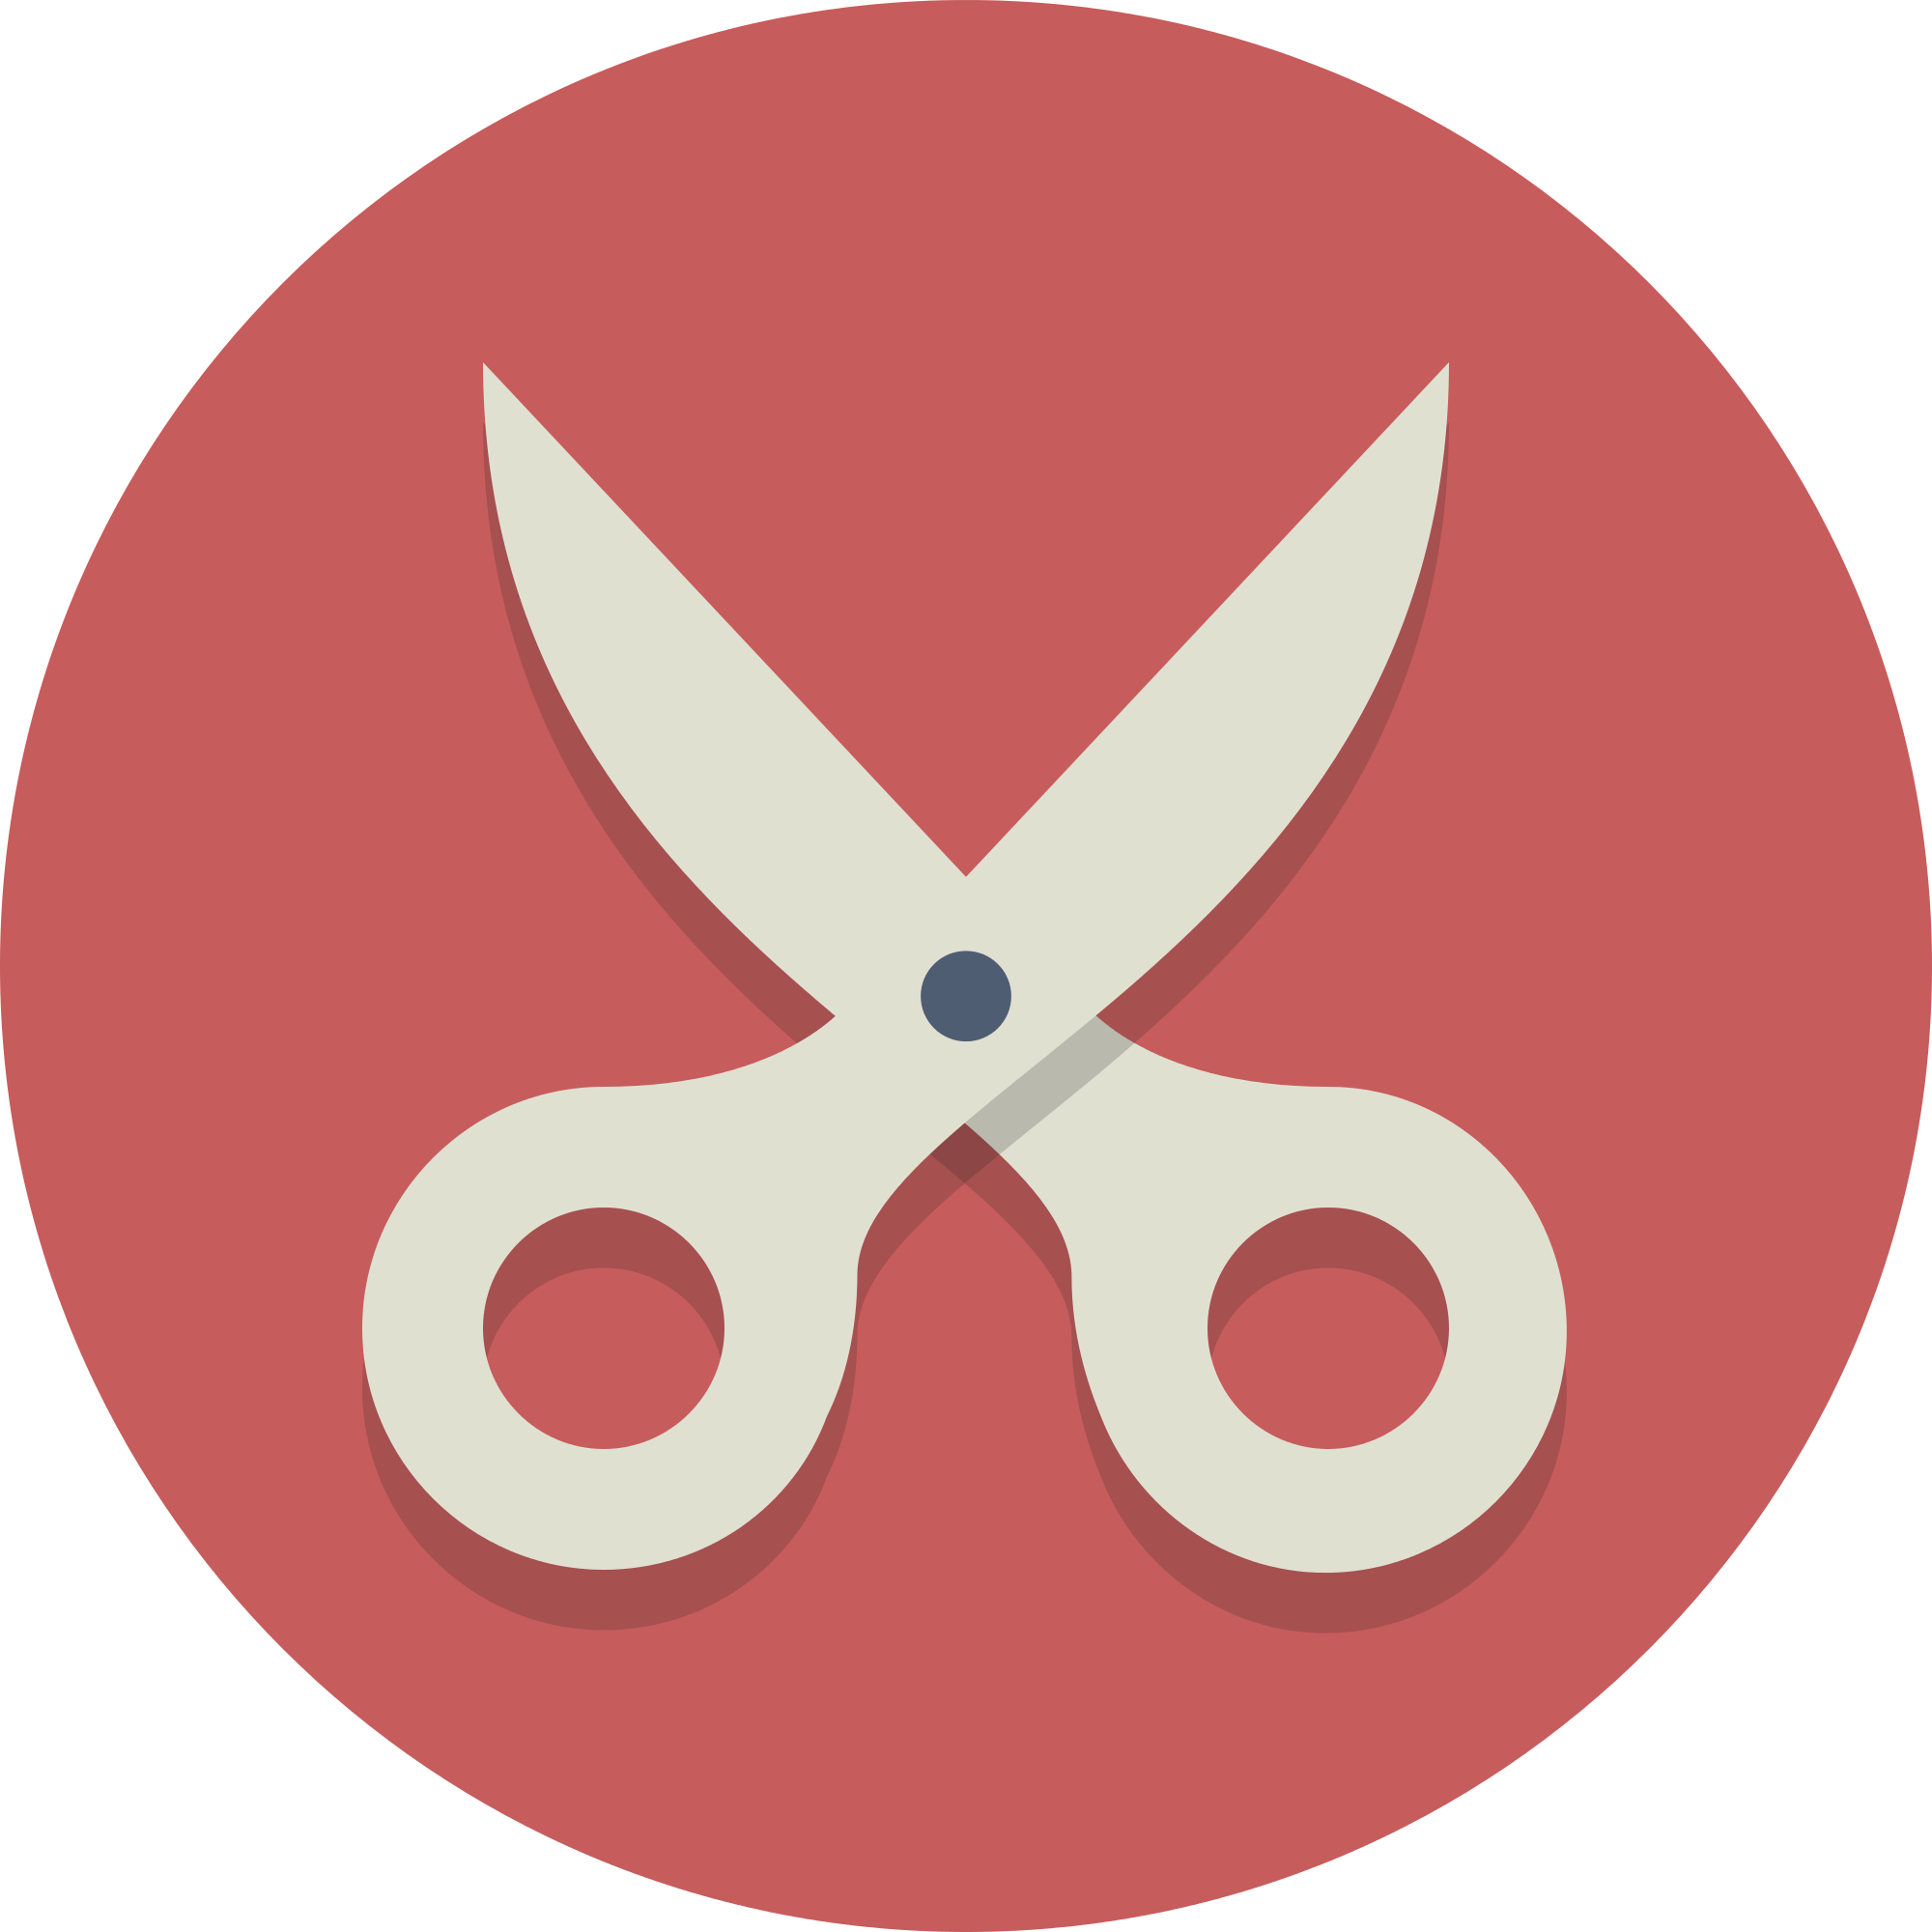 Scissors cut. Значок ножницы. Ножницы пиктограмма. Ножницы ICO. Ножницы логотип.